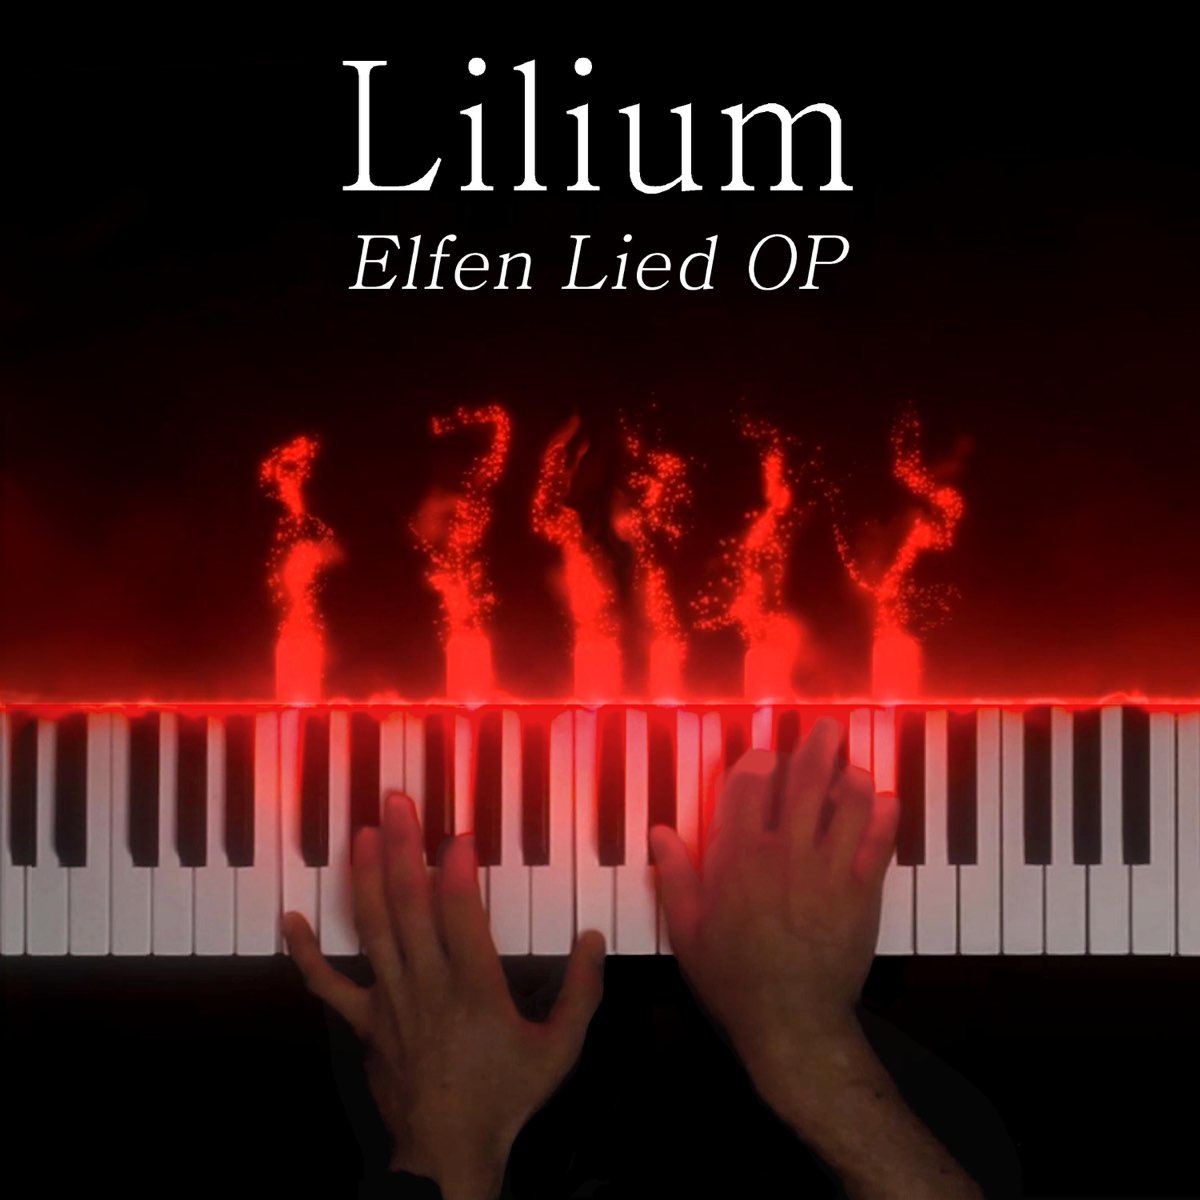 ELFEN LIED - Lilium - Opening 1 